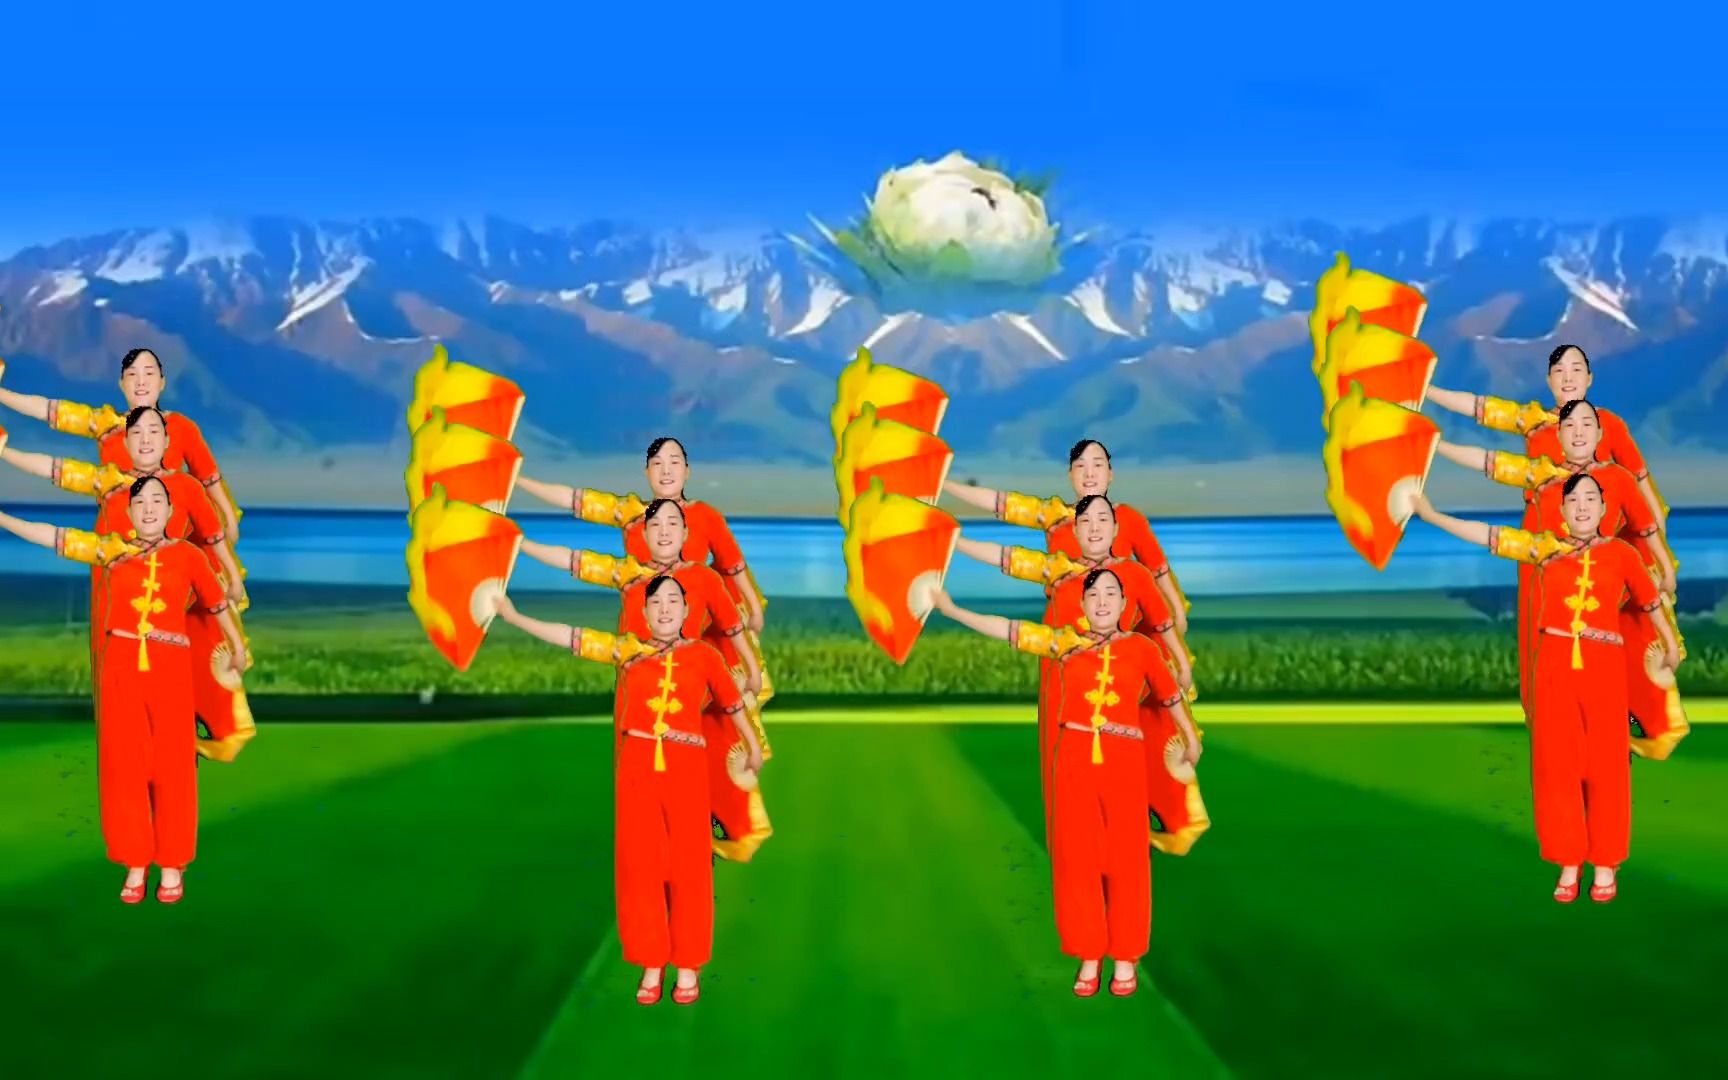 扇子广场舞《中国美》12人队形版,优美大气